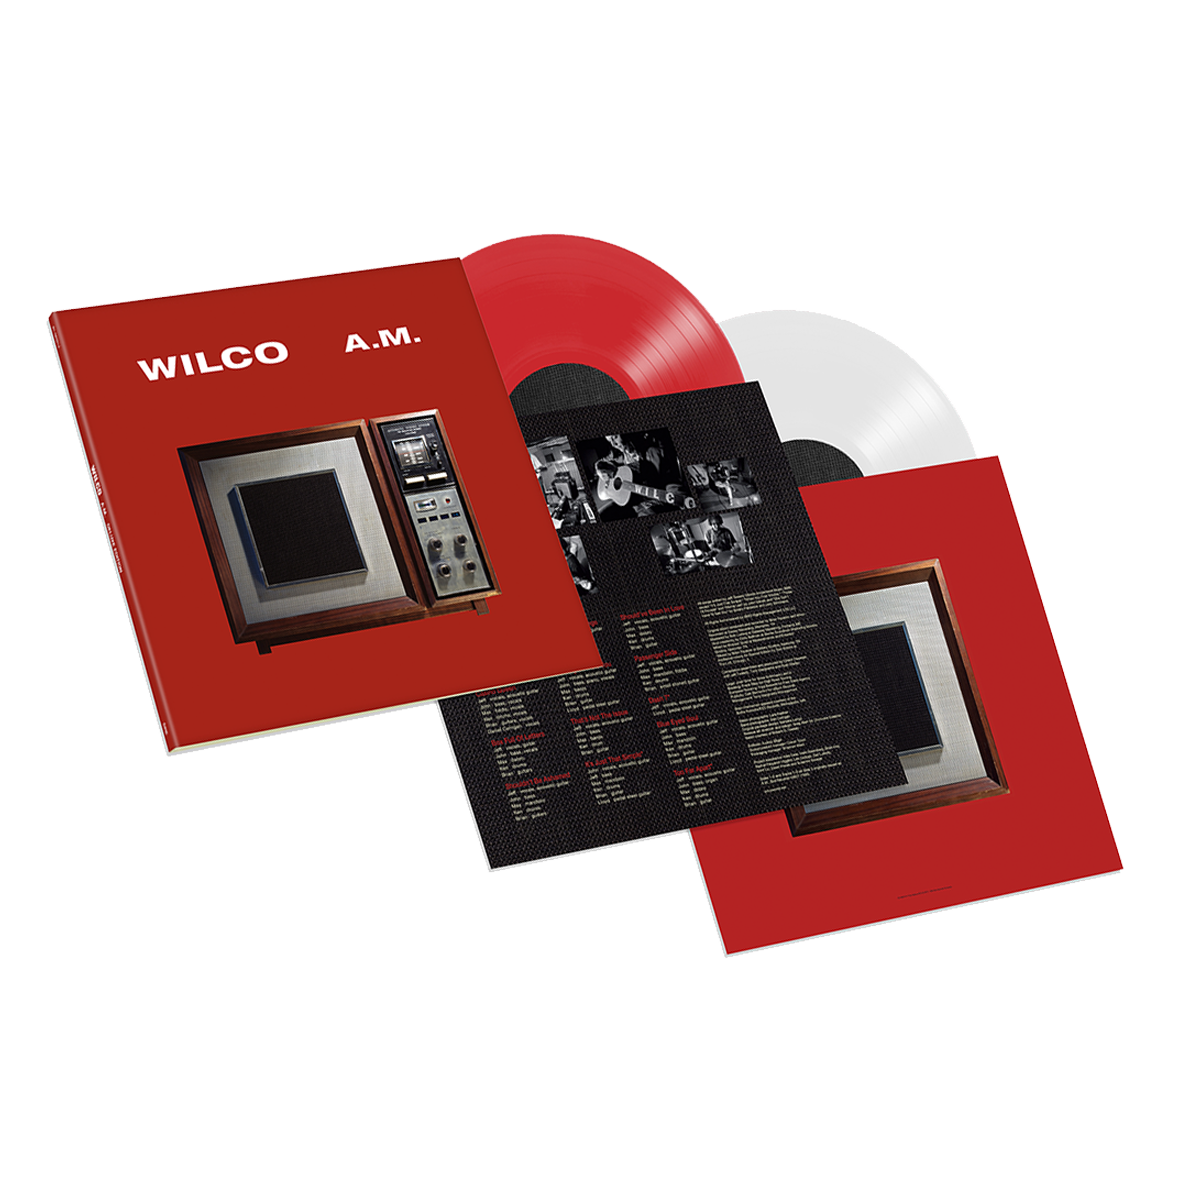 Wilco album AM on Deluxe vinyl LP from Bingo Merch Official Merchandise